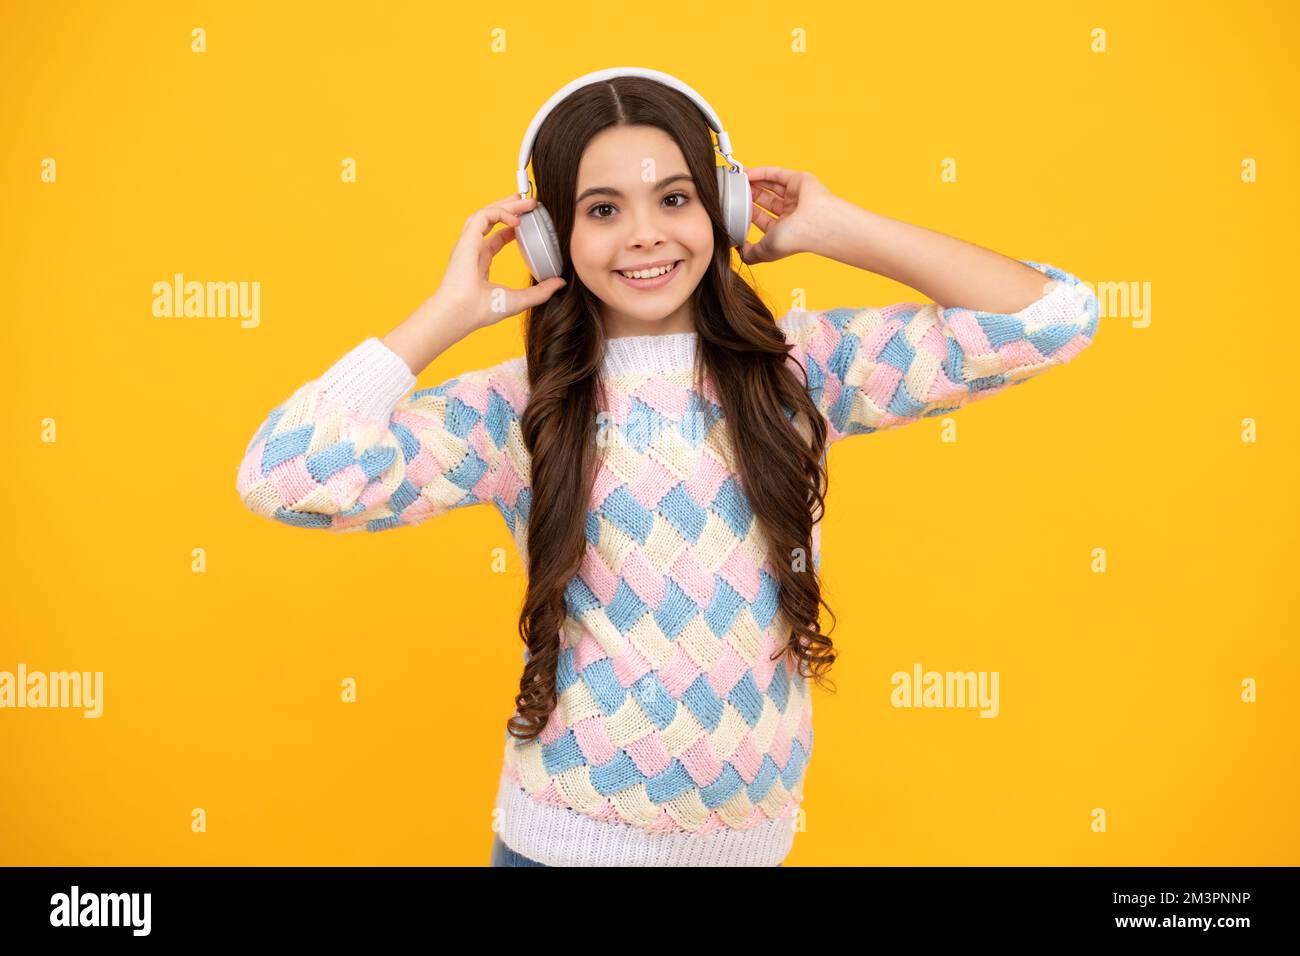 Teen girl in cuffie ascoltare musica. Dispositivo auricolare wireless. I bambini amano la musica in auricolari su sfondo giallo. Foto Stock